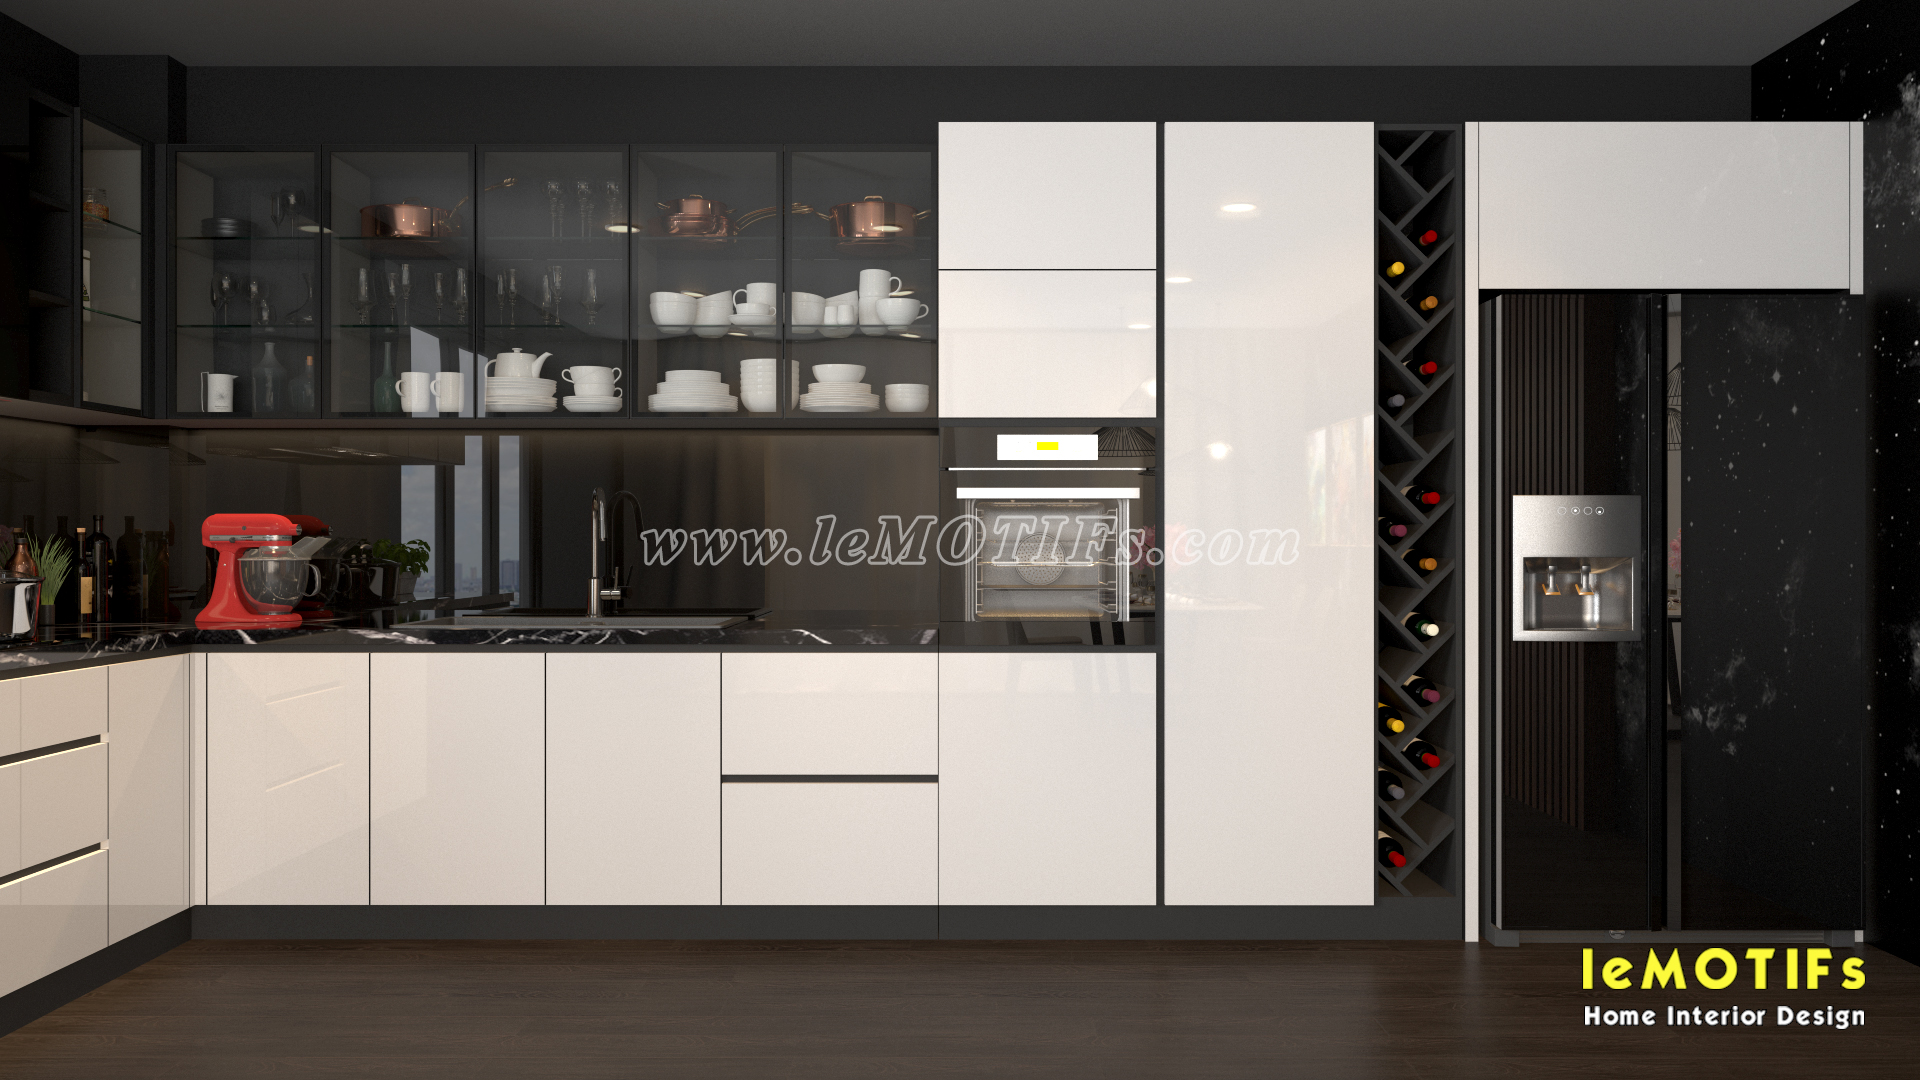 <img src=” http://lemotifs.com/wp-content/uploads/2019/05/Thiet-ke-tu-bep-phong-cach-trang-va-den-nha-co-mai-quan-10-V1.jpg” alt=”thiết kế tủ bếp trắng và đen />